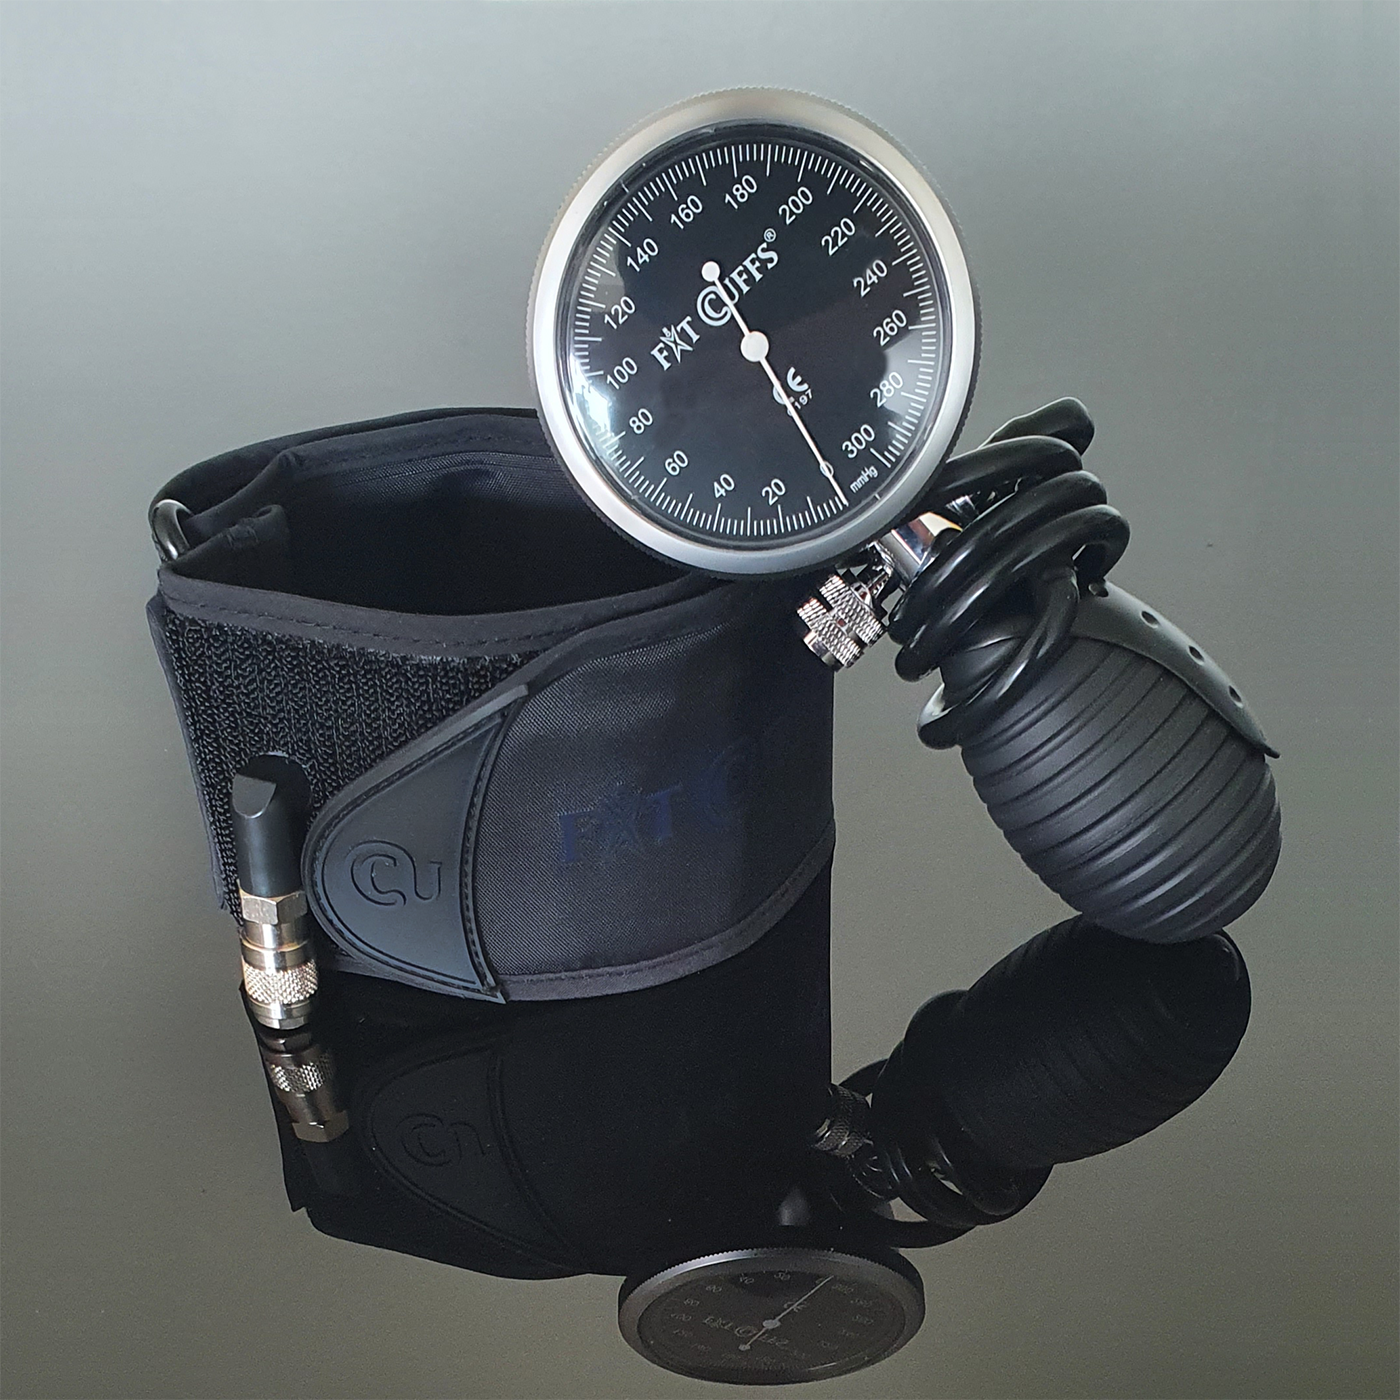 Billede af Fit Cuffs - Rehab Upper V3.1 - Standard - Black